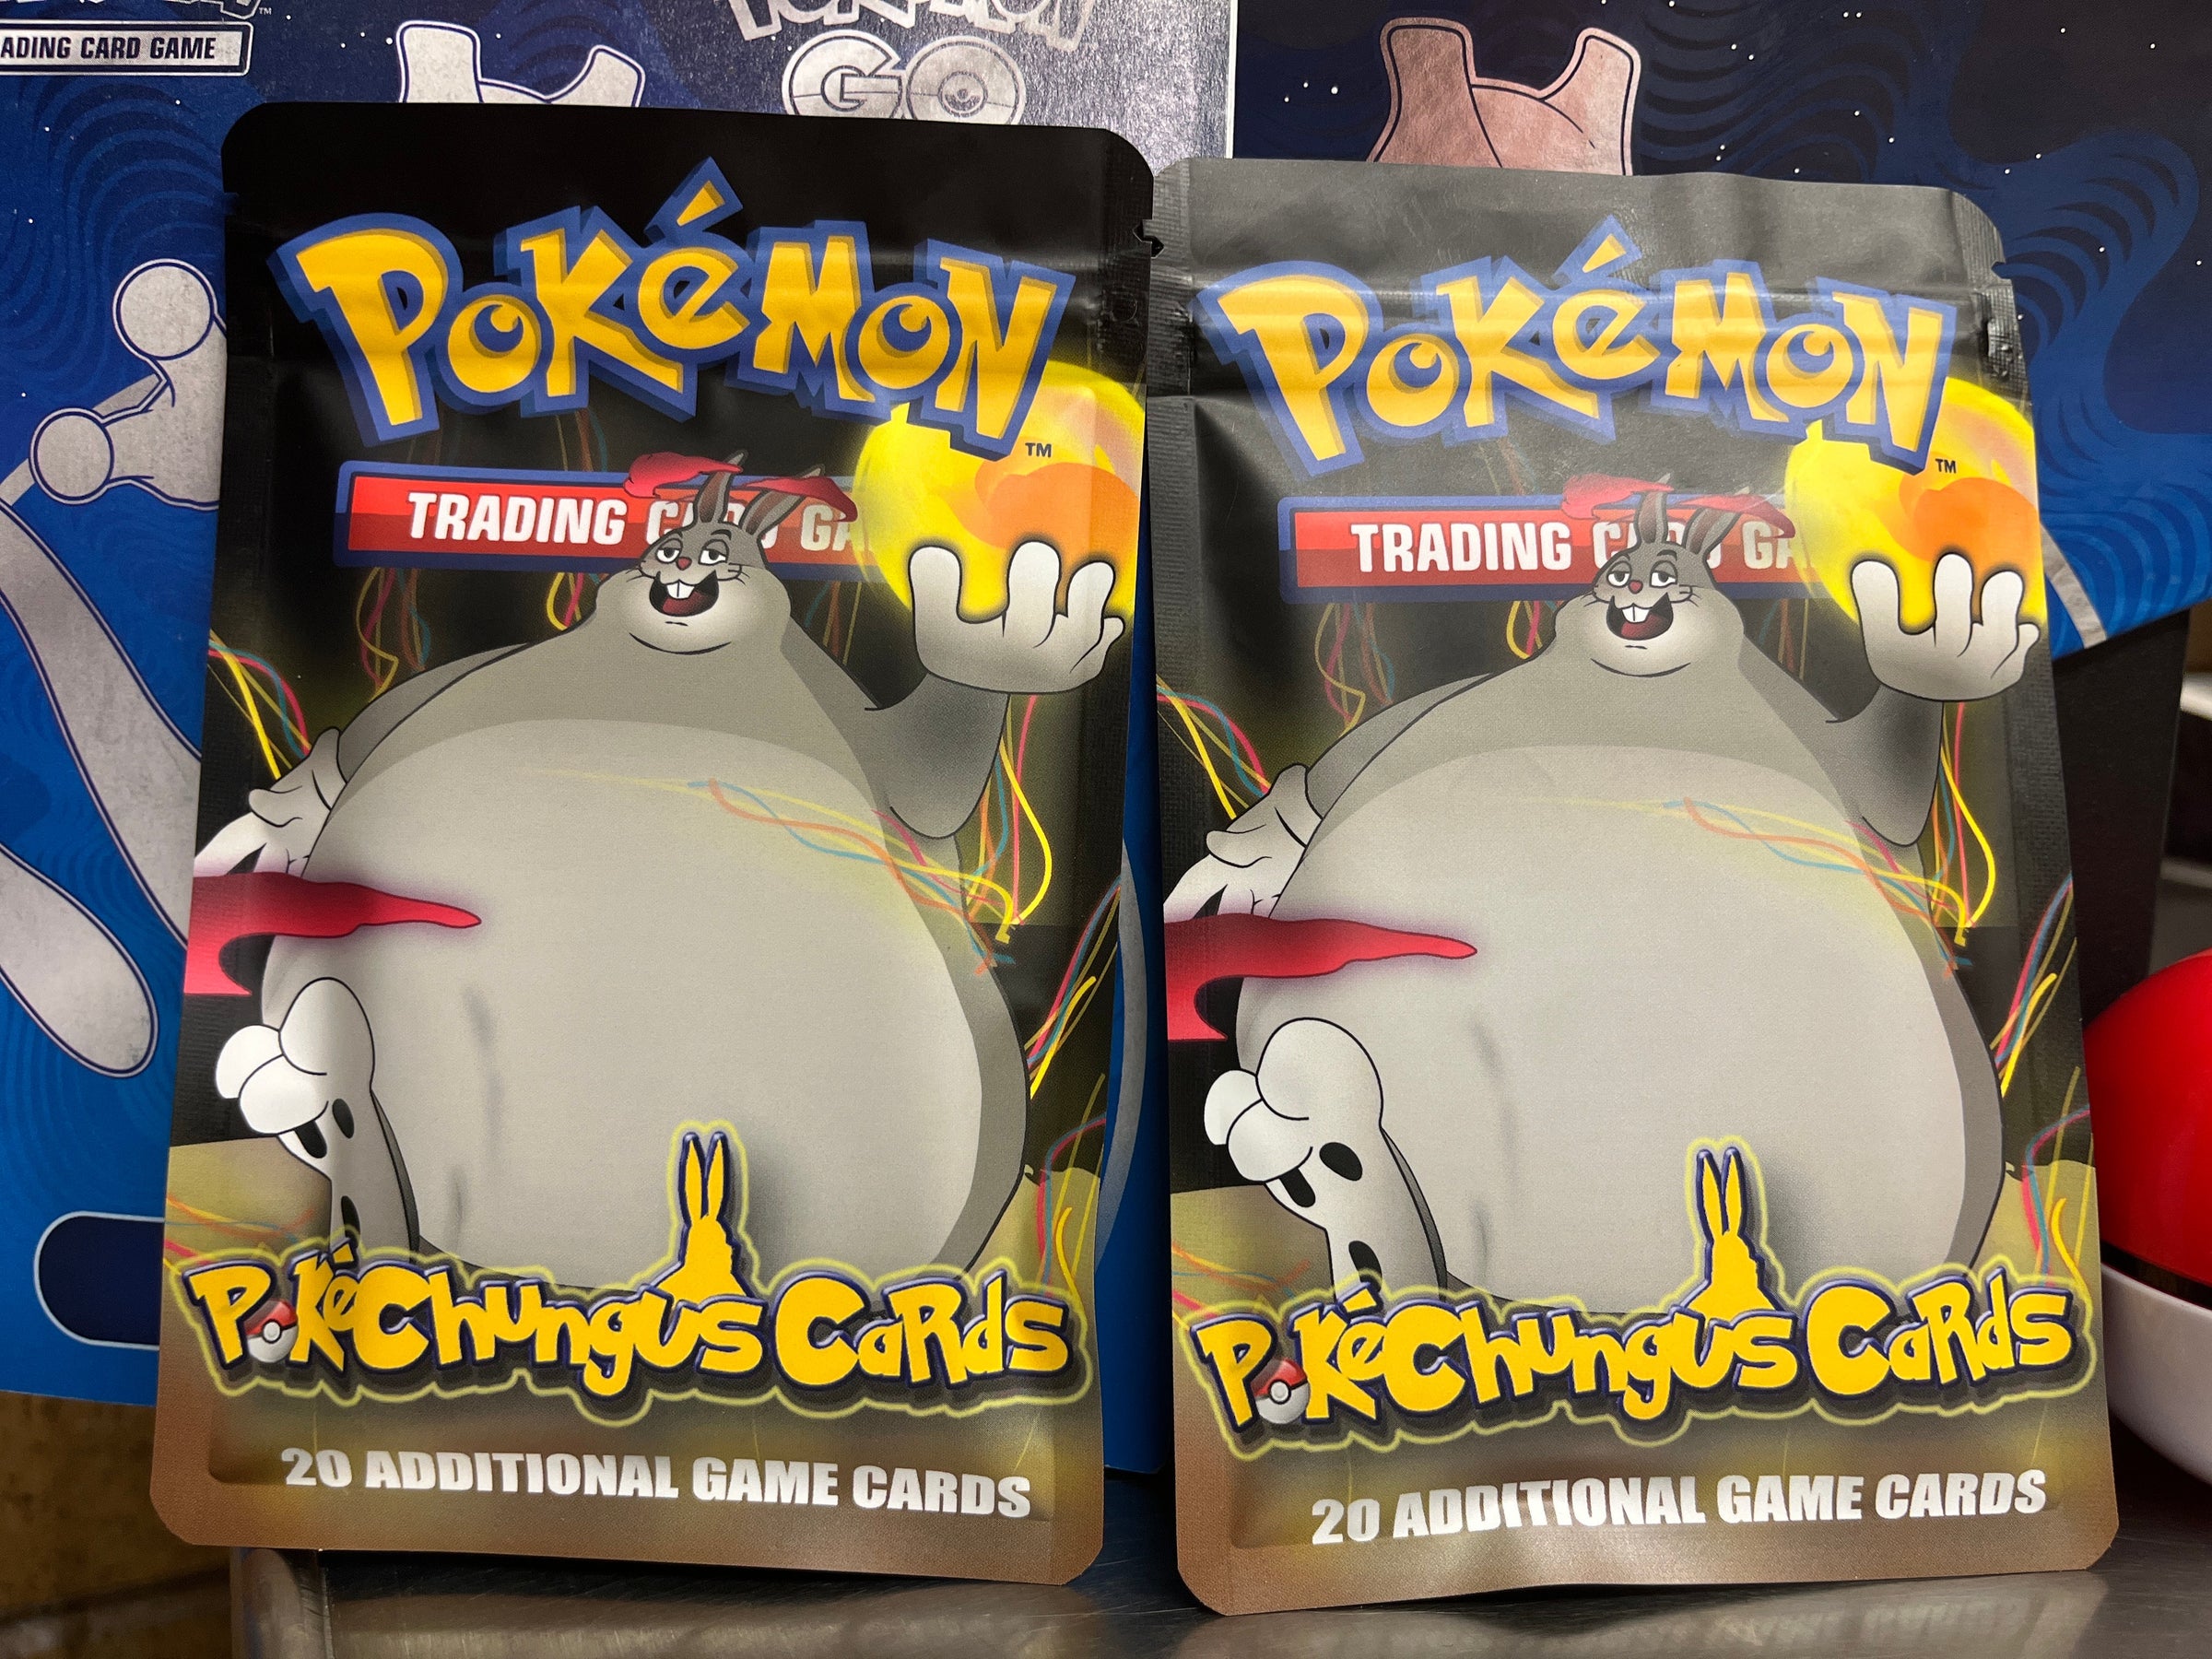 BEST Pokémon MYSTERY BOX Guaranteed Hits Rares Holos Shiny 